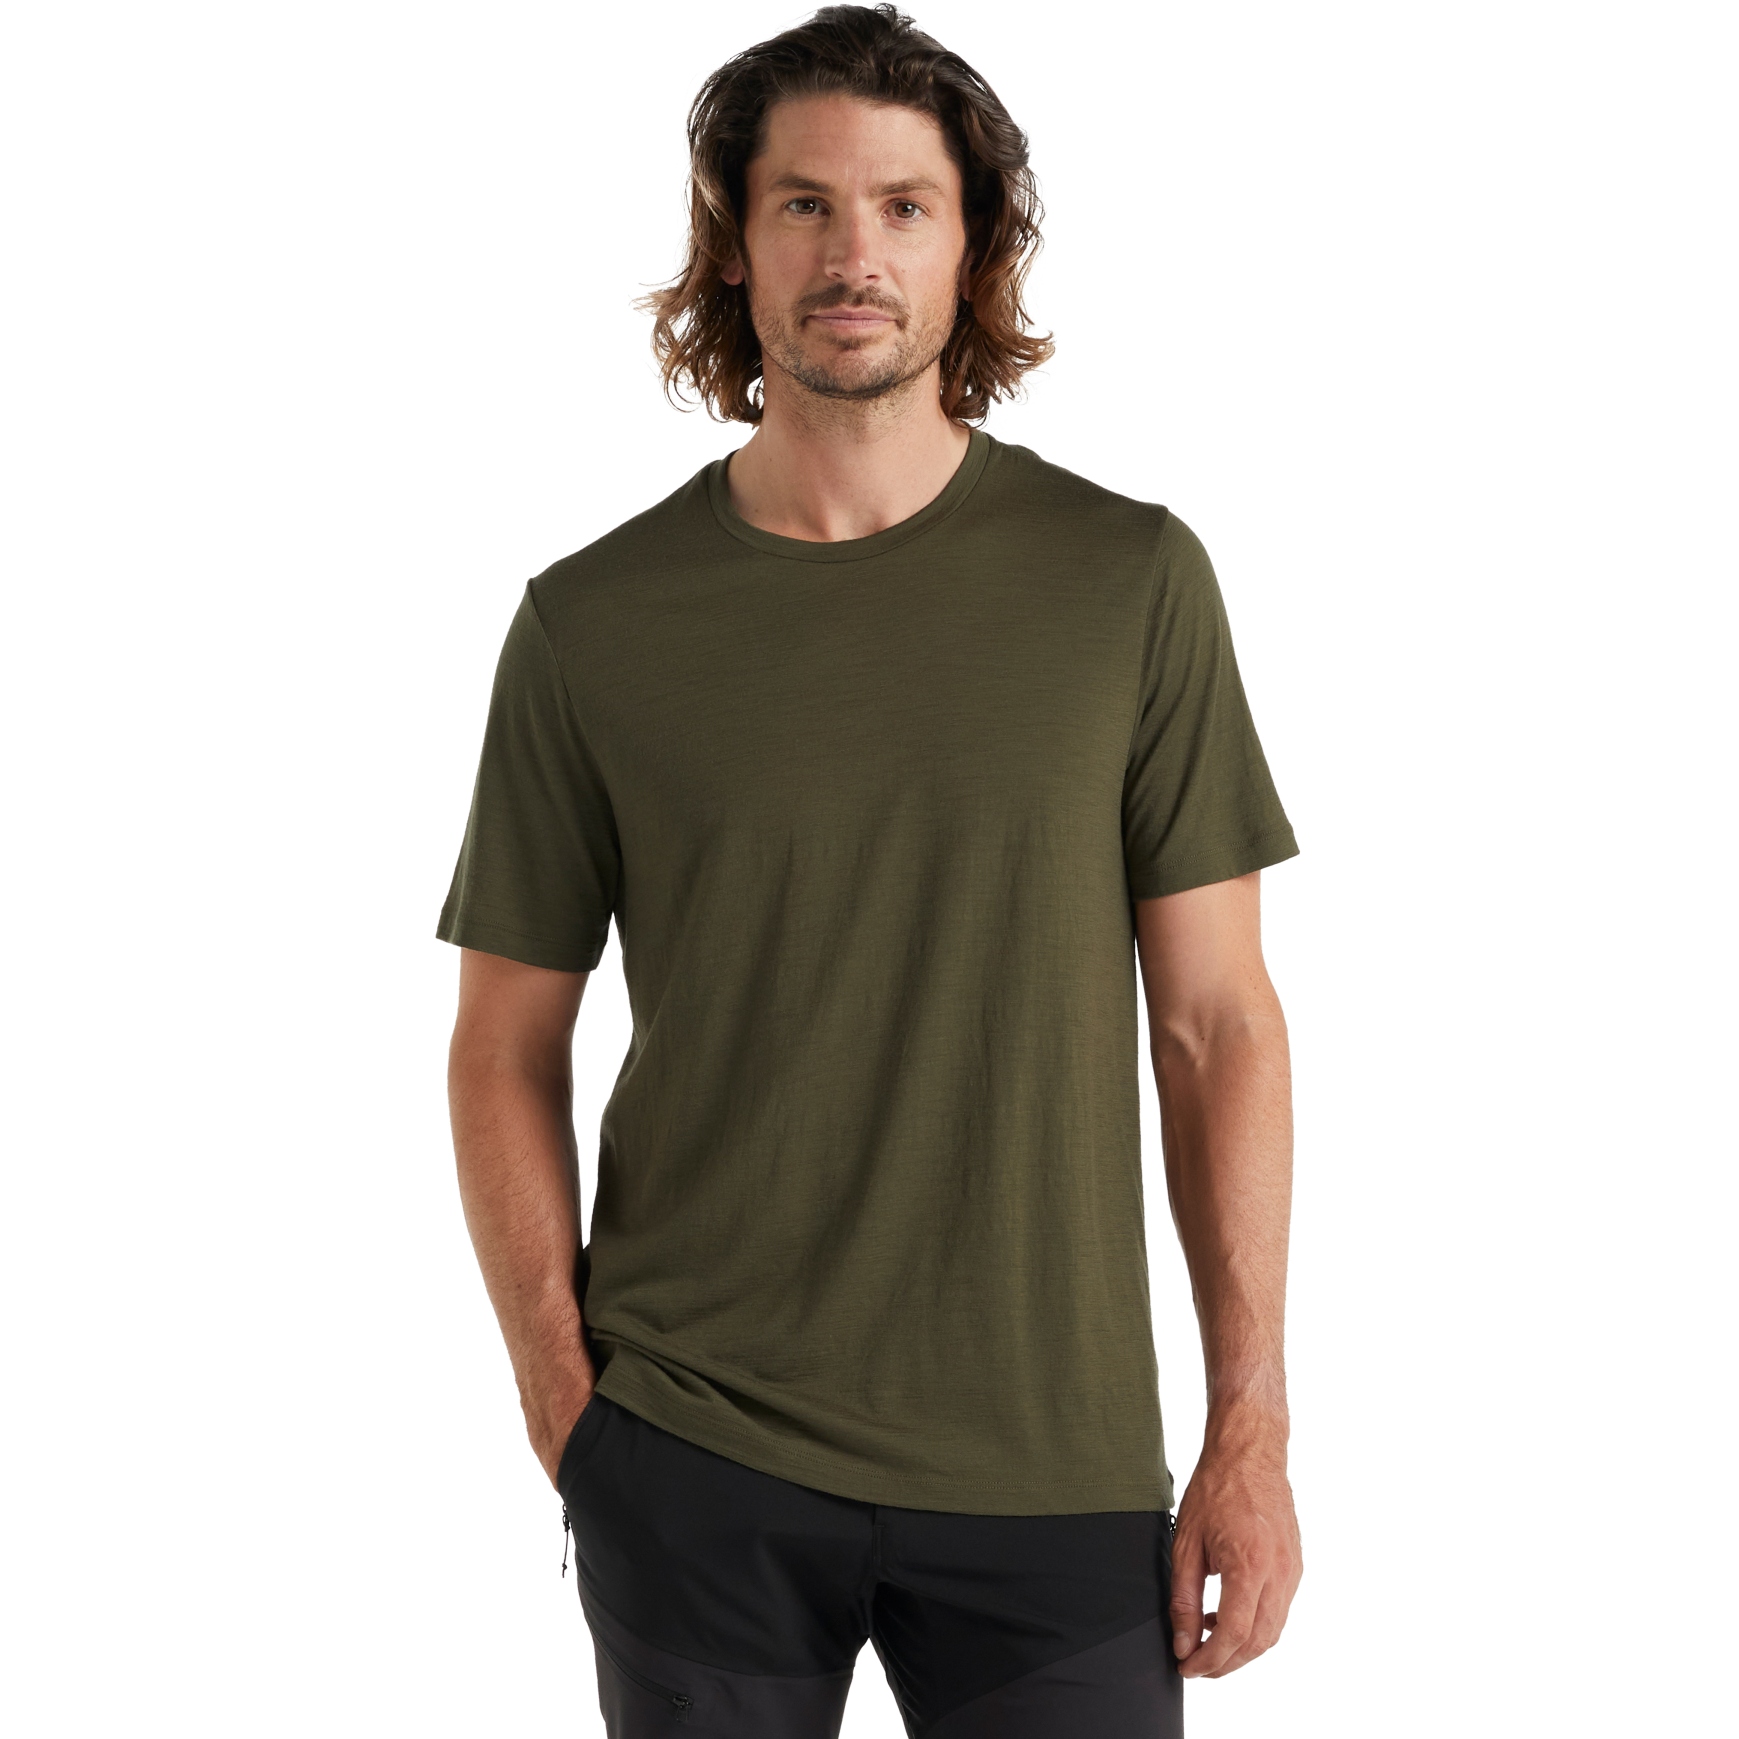 Produktbild von Icebreaker Tech Lite II T-Shirt Herren - Loden